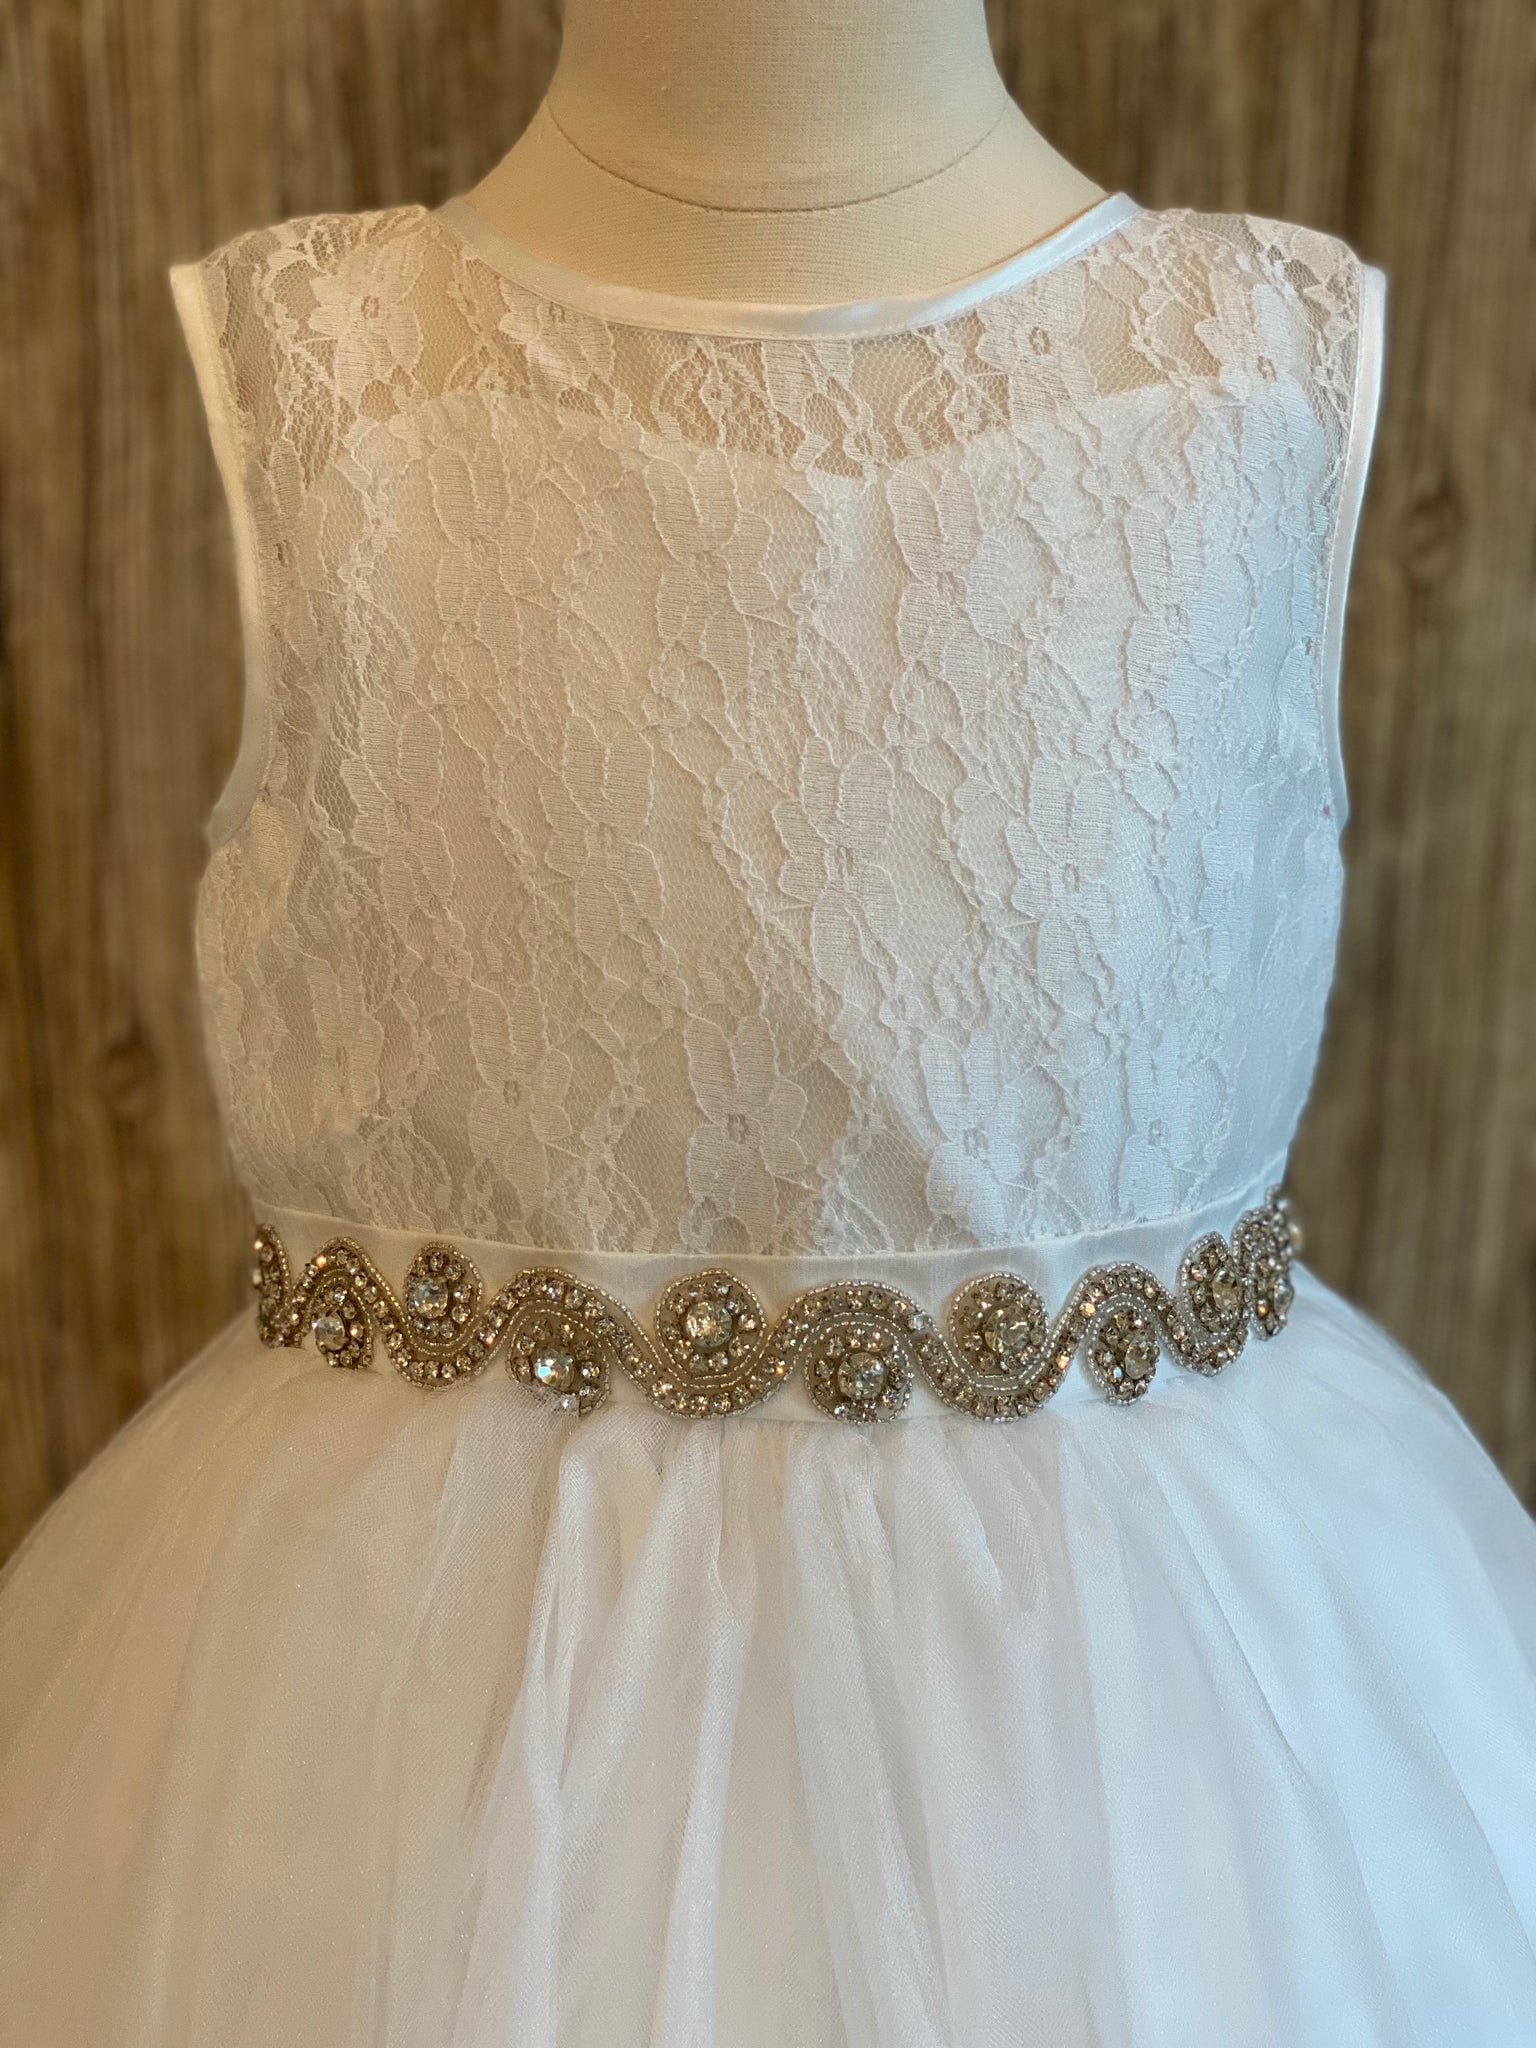 White, size 12 Lace bodice with satin trim Swirled rhinestone belt Tulle skirt Keyhole back Button closure Satin bow